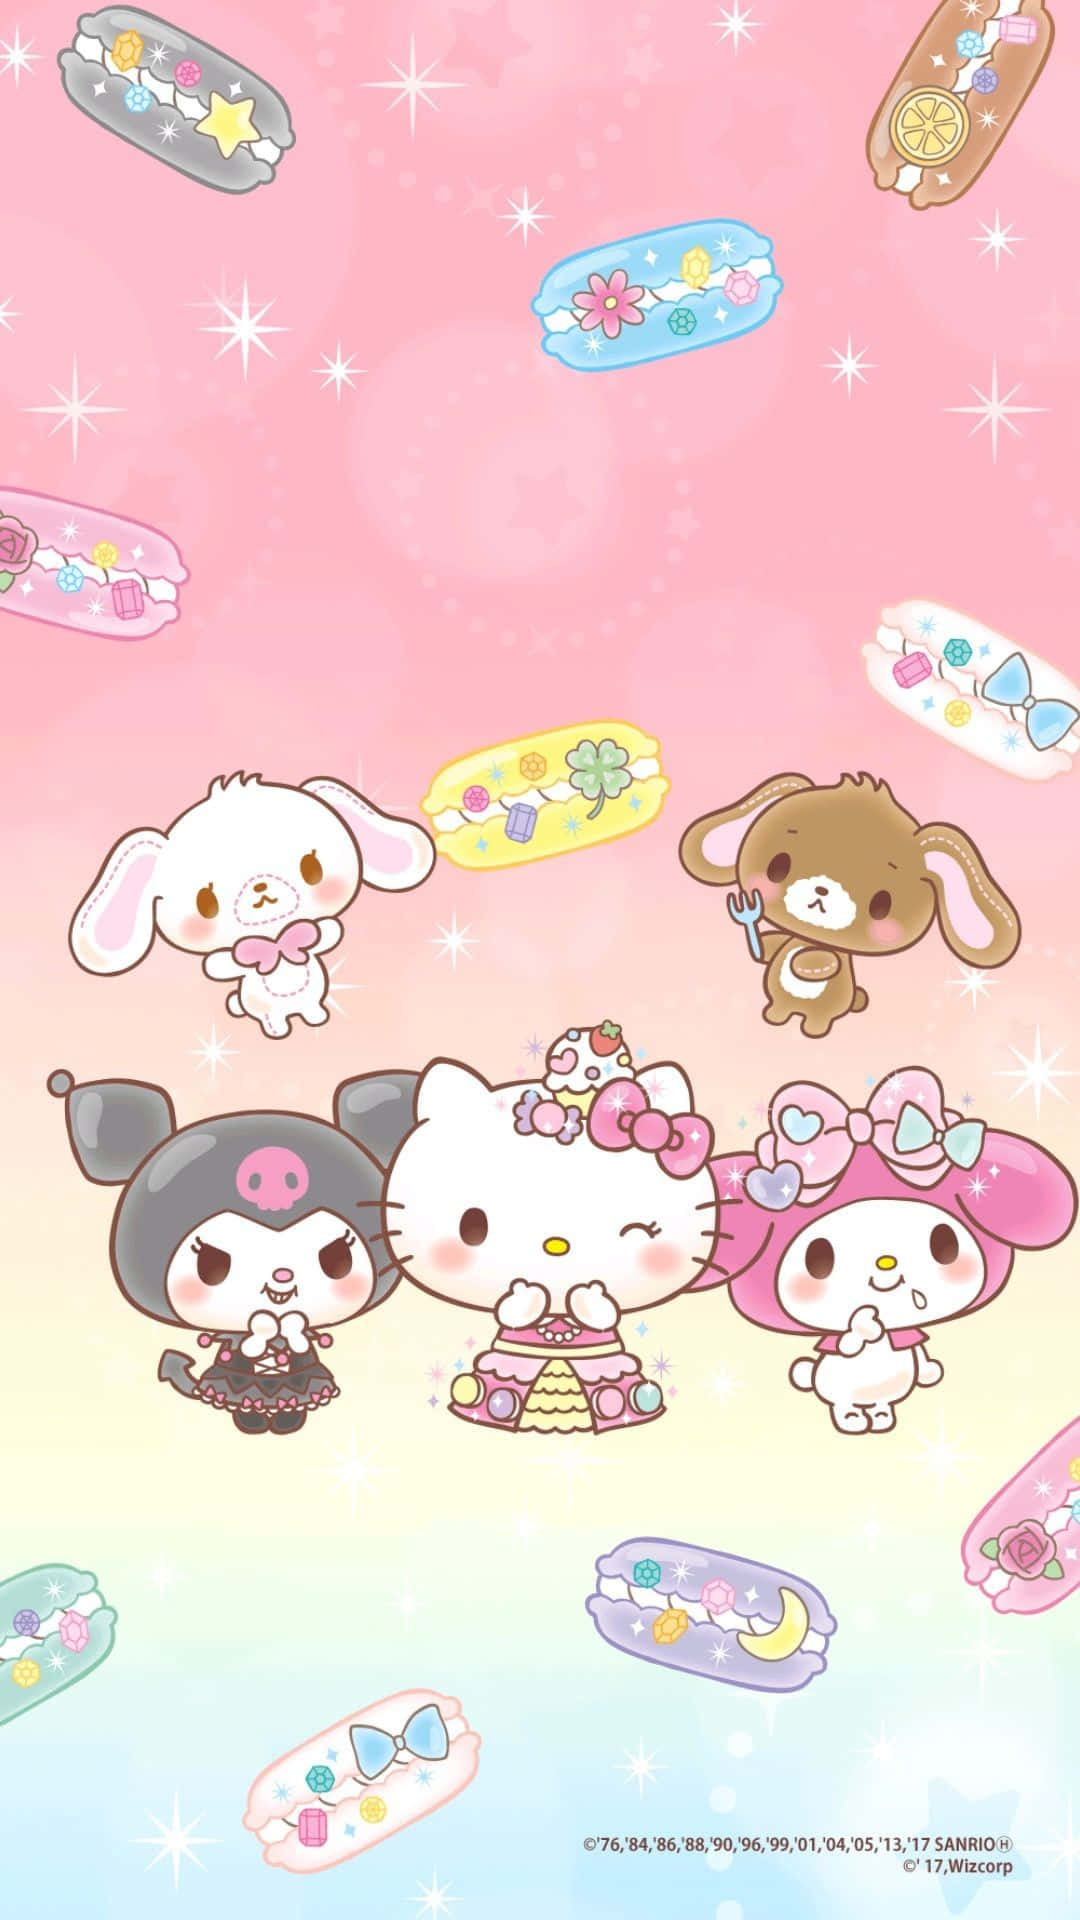 Sfondidi Hello Kitty - Sfondi Di Hello Kitty Sfondo